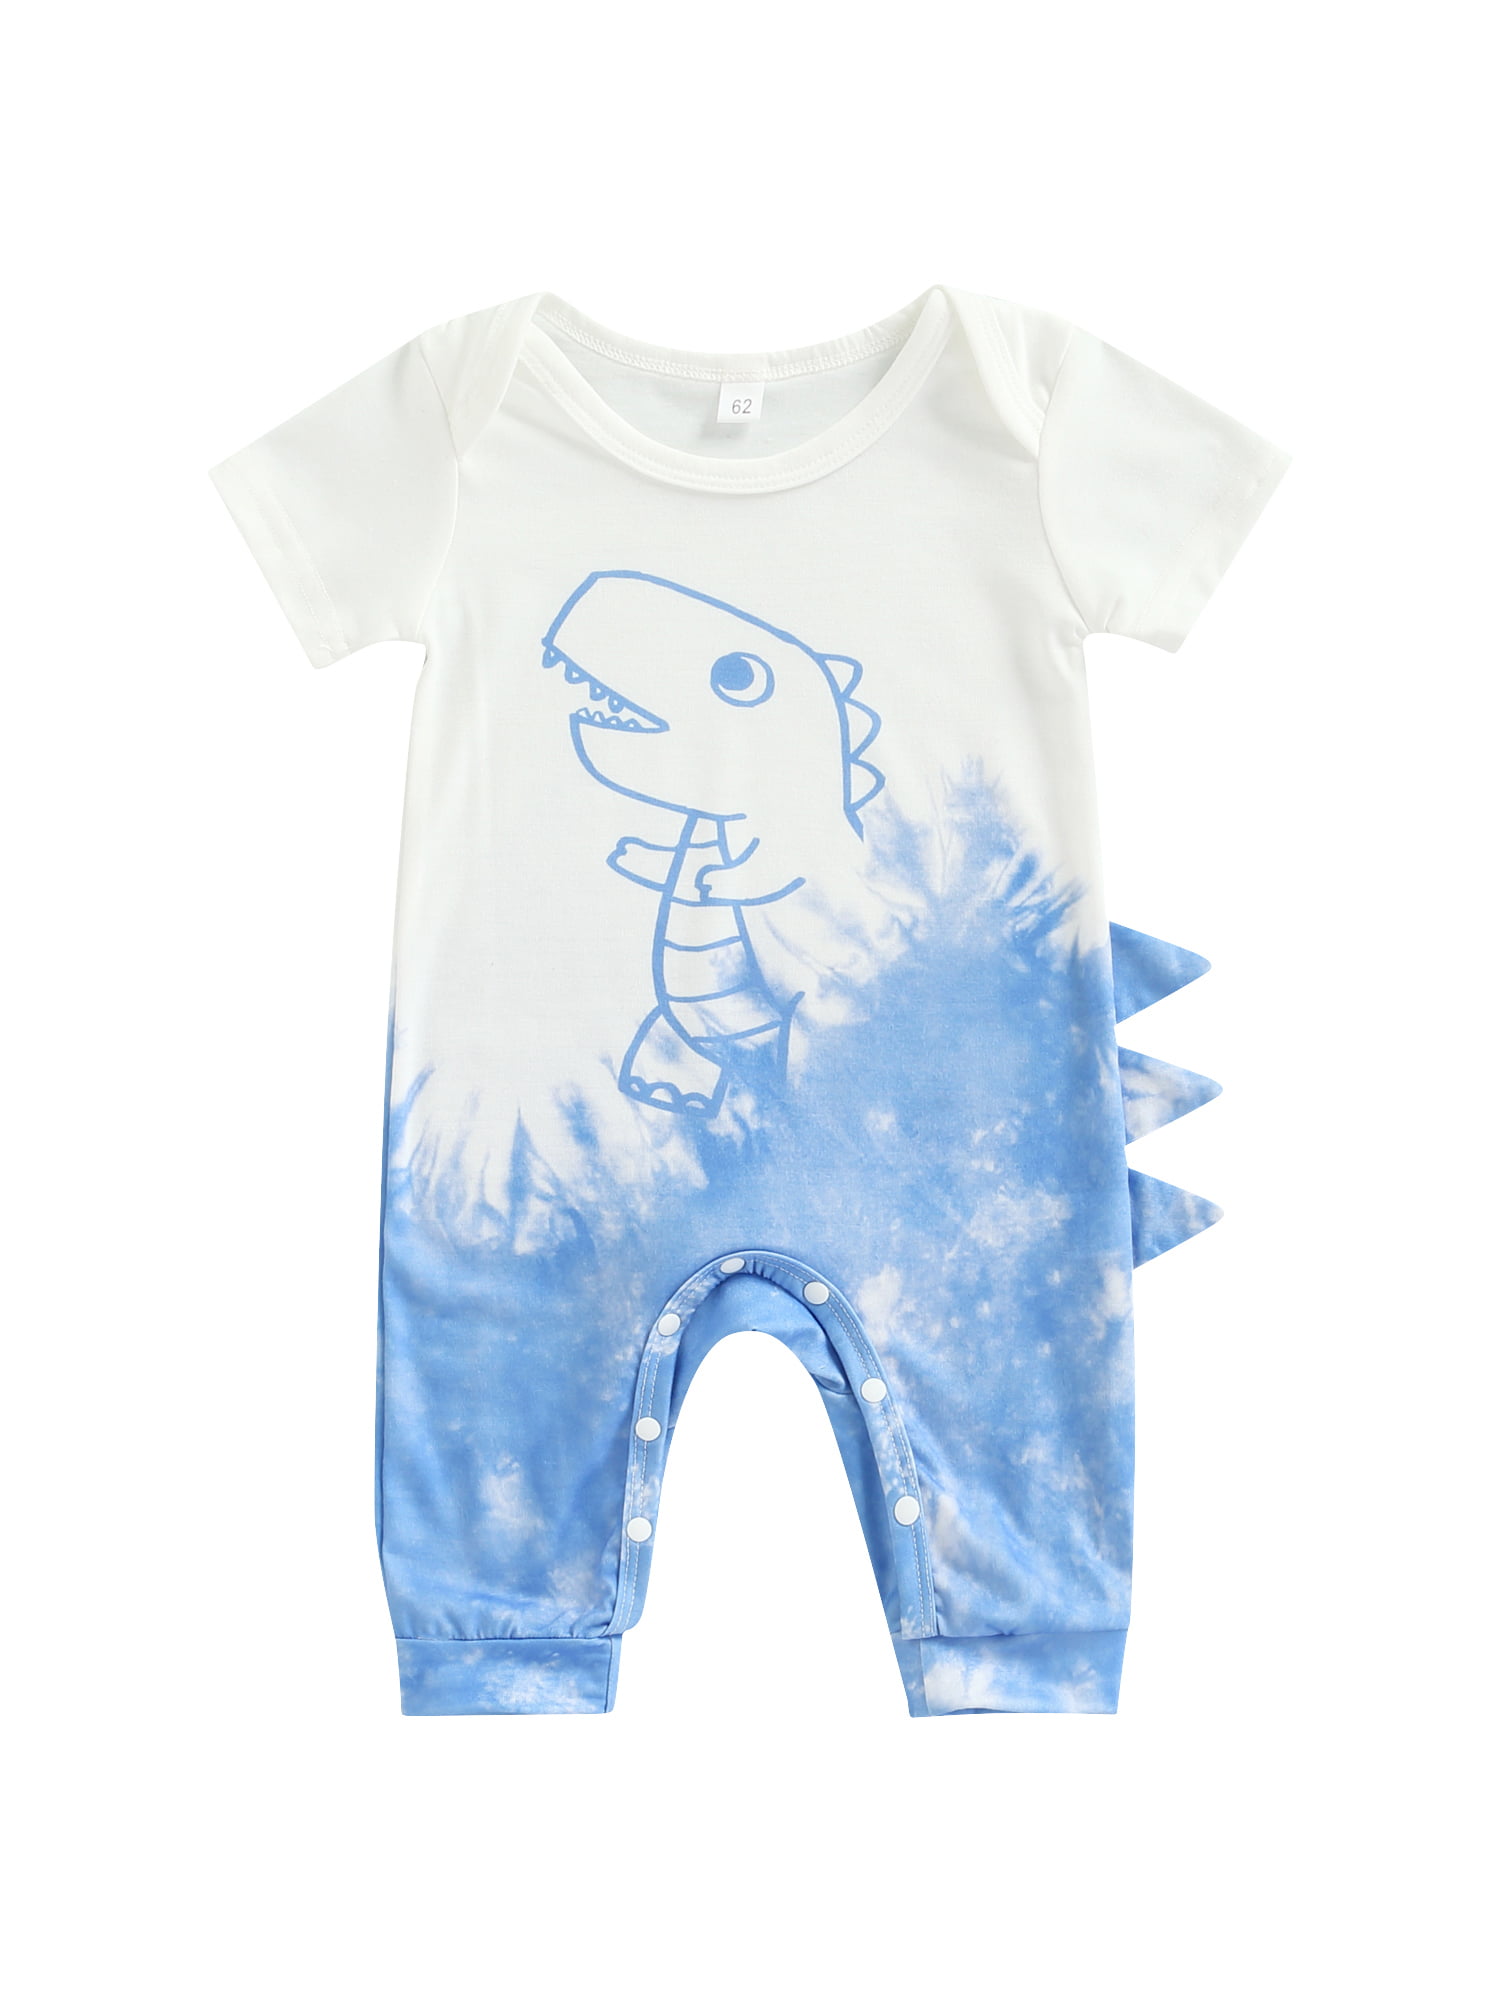 The Fierce Dinosaur Infant Baby Boys Girls Short Sleeve Romper Bodysuit Tops 0-24M 